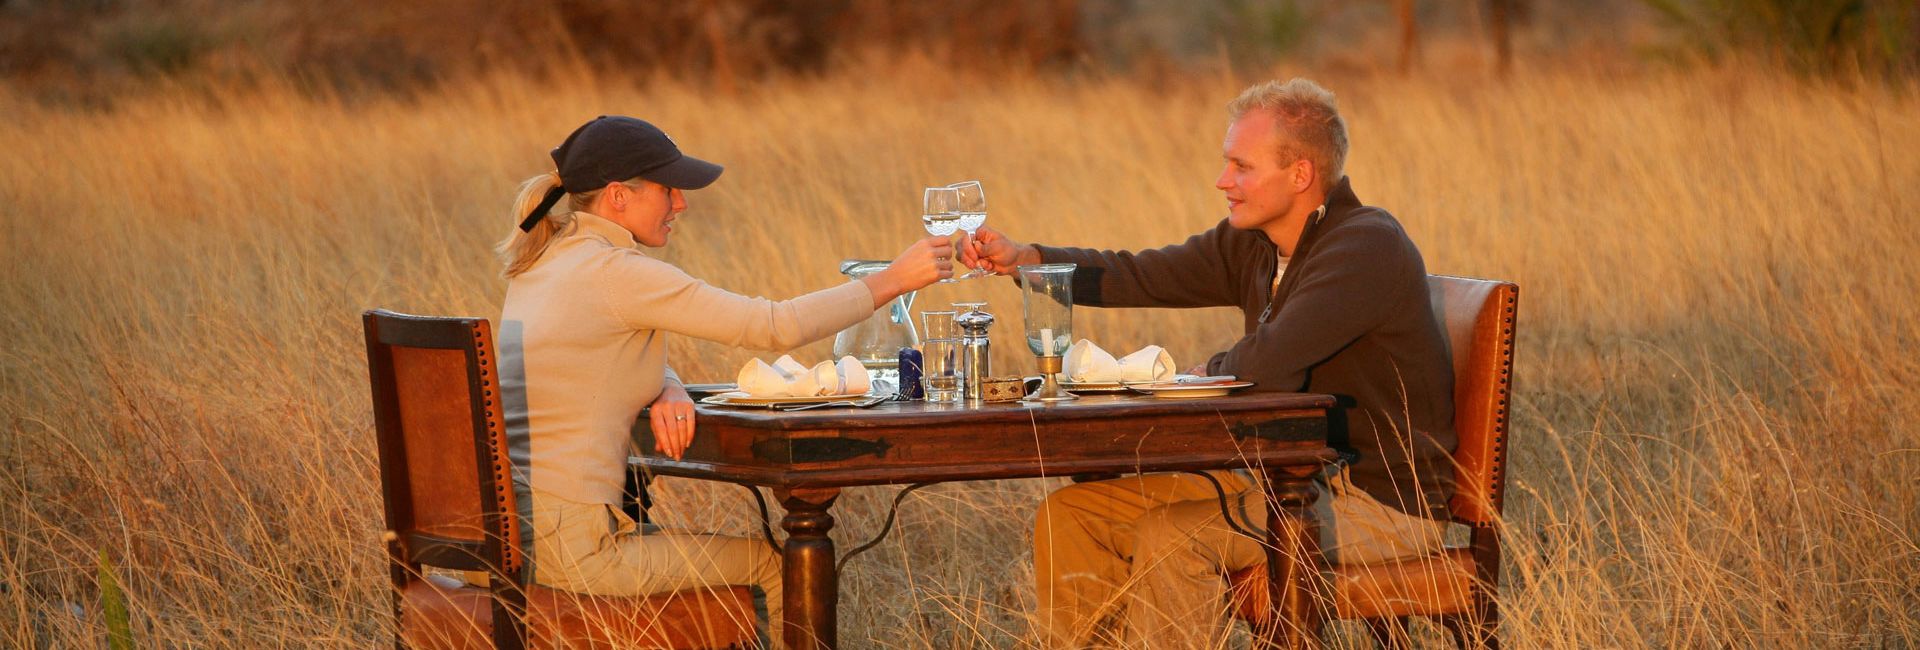 Chalema Tanzania Safaris Offer Personalized Luxury Honeymoon Safari In Tanzania